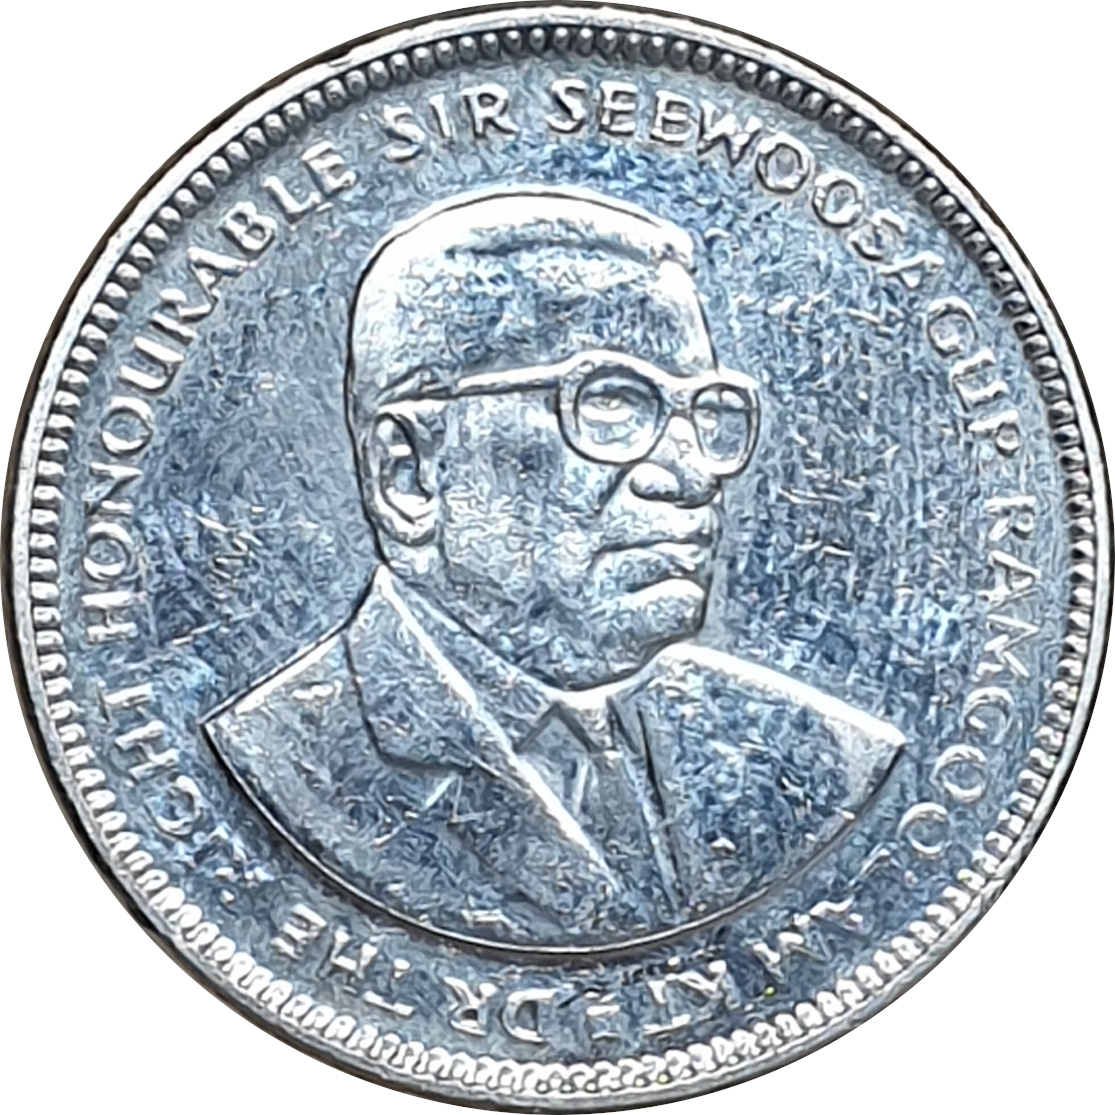 1/2 rupee - Sir Seewoosagur Ramgoolam